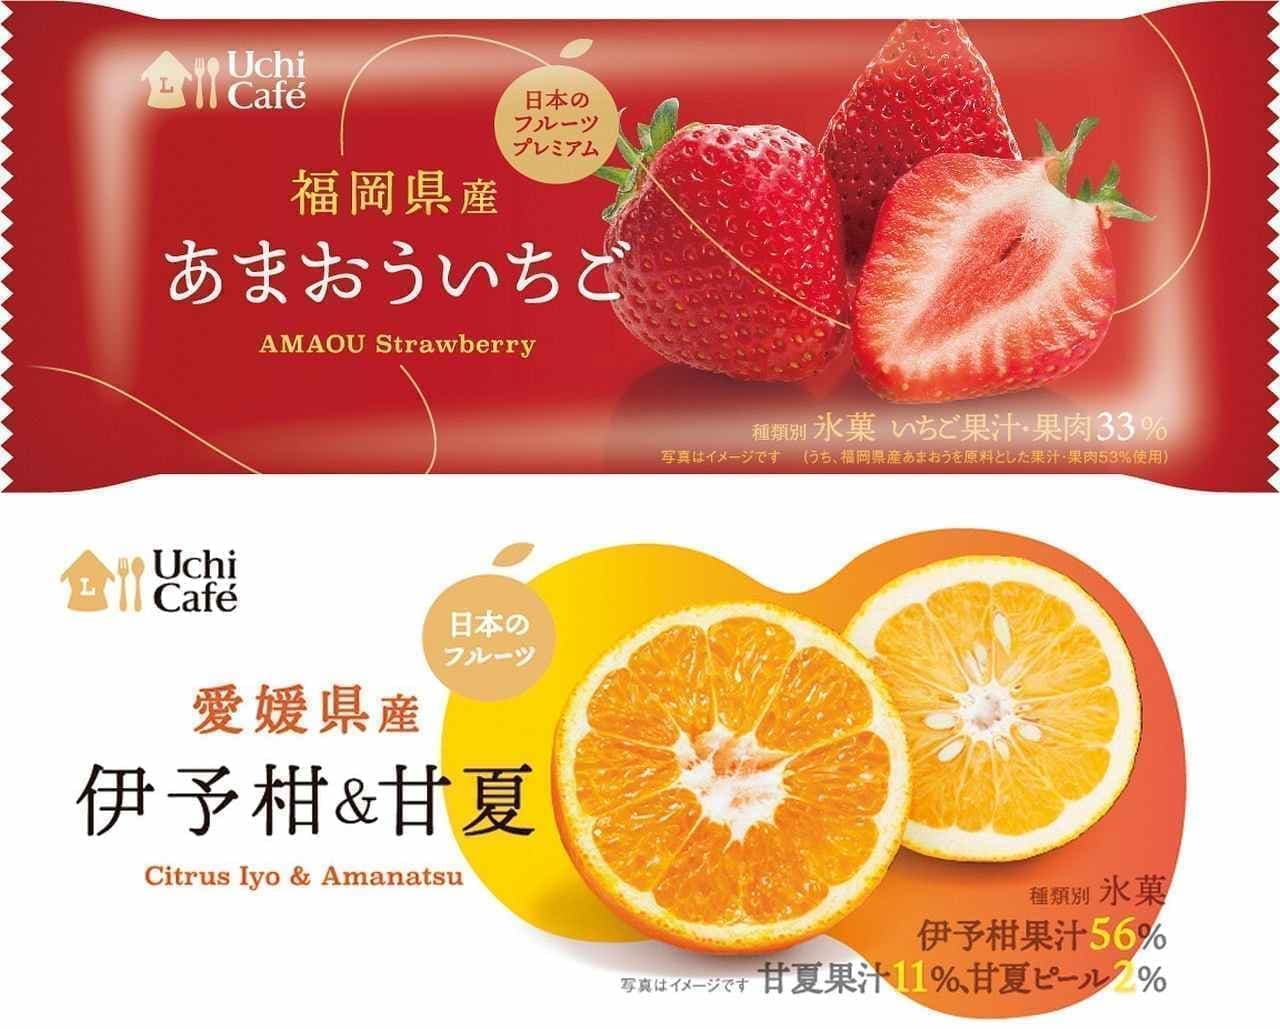 Lawson "Uchi Cafe Japanese Fruit Premium Amaou Strawberry" and "Uchi Cafe Japanese Fruit Iyokan & Amanatsu"